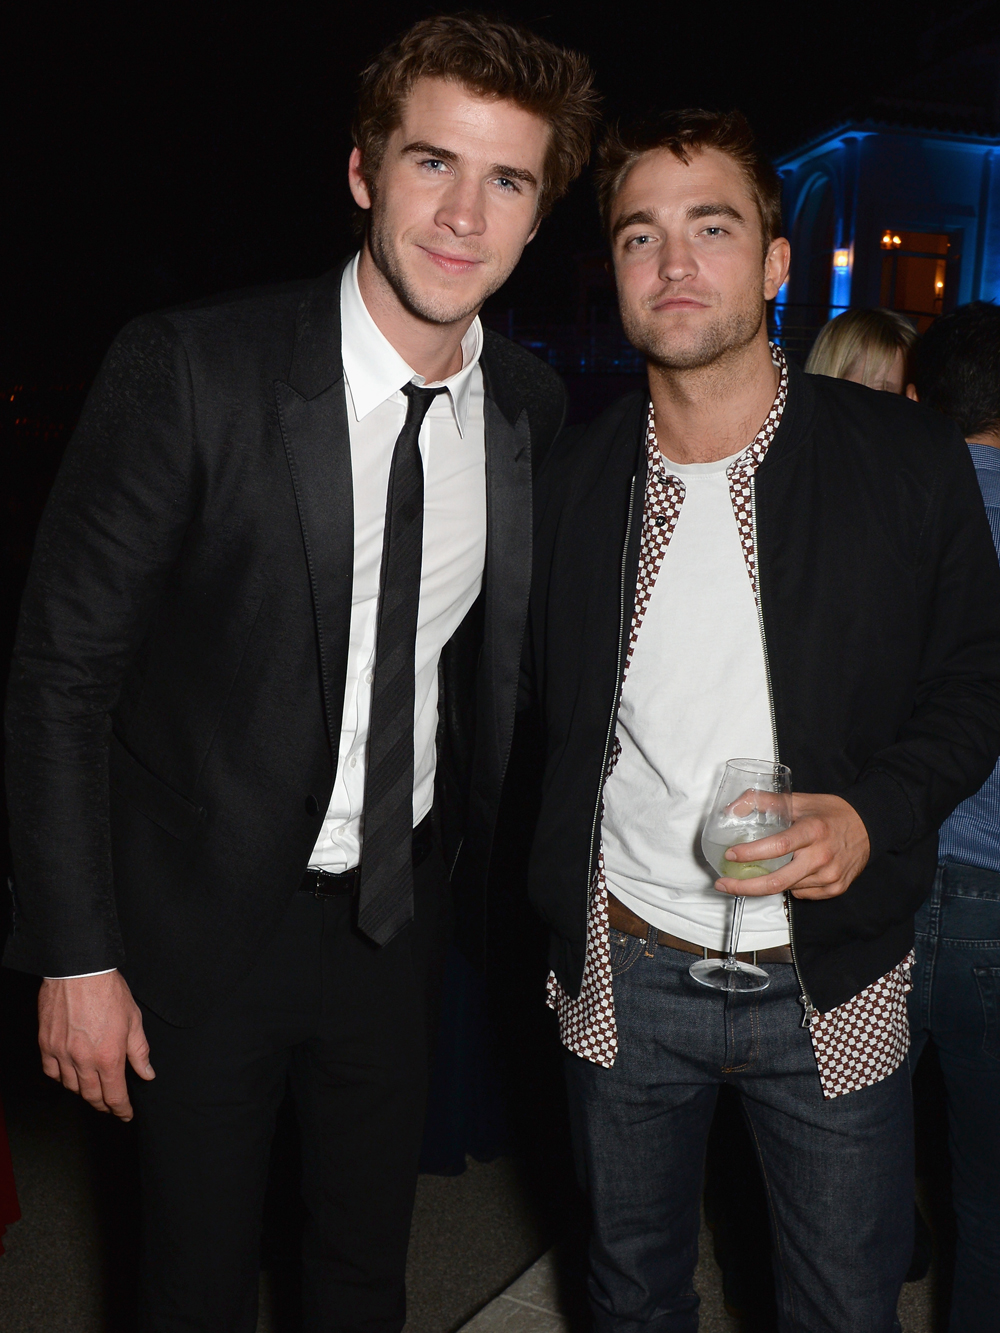 Giorgio Armani + Vanity Fair Celebrate Cannes with Robert Pattinson, Adrian  Grenier + More – The Fashionisto